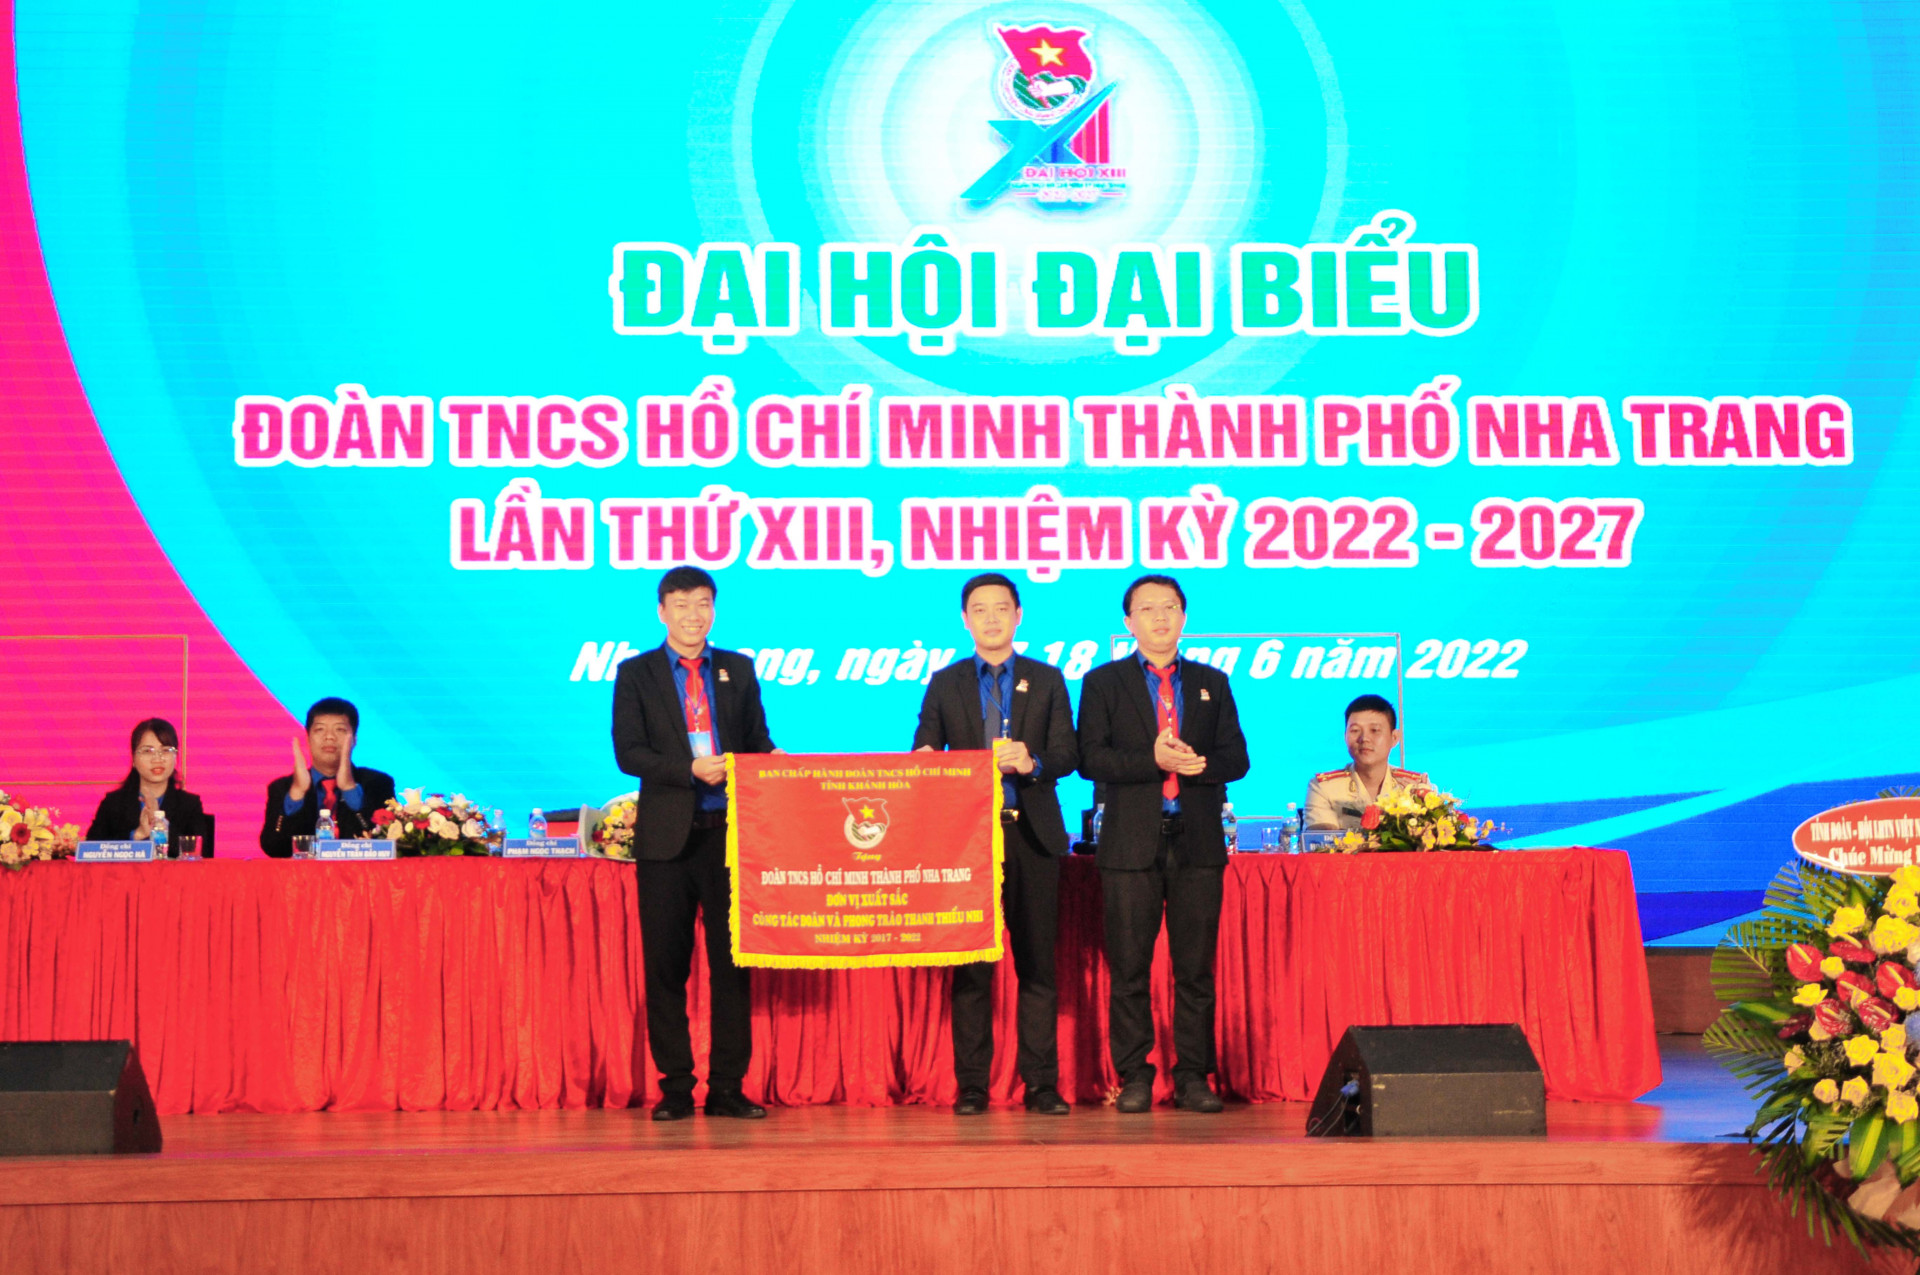 Tỉnh đoàn trao cờ thi đua xuất sắc nhiệm kỳ 2017 - 2022 cho Thành đoàn Nha Trang